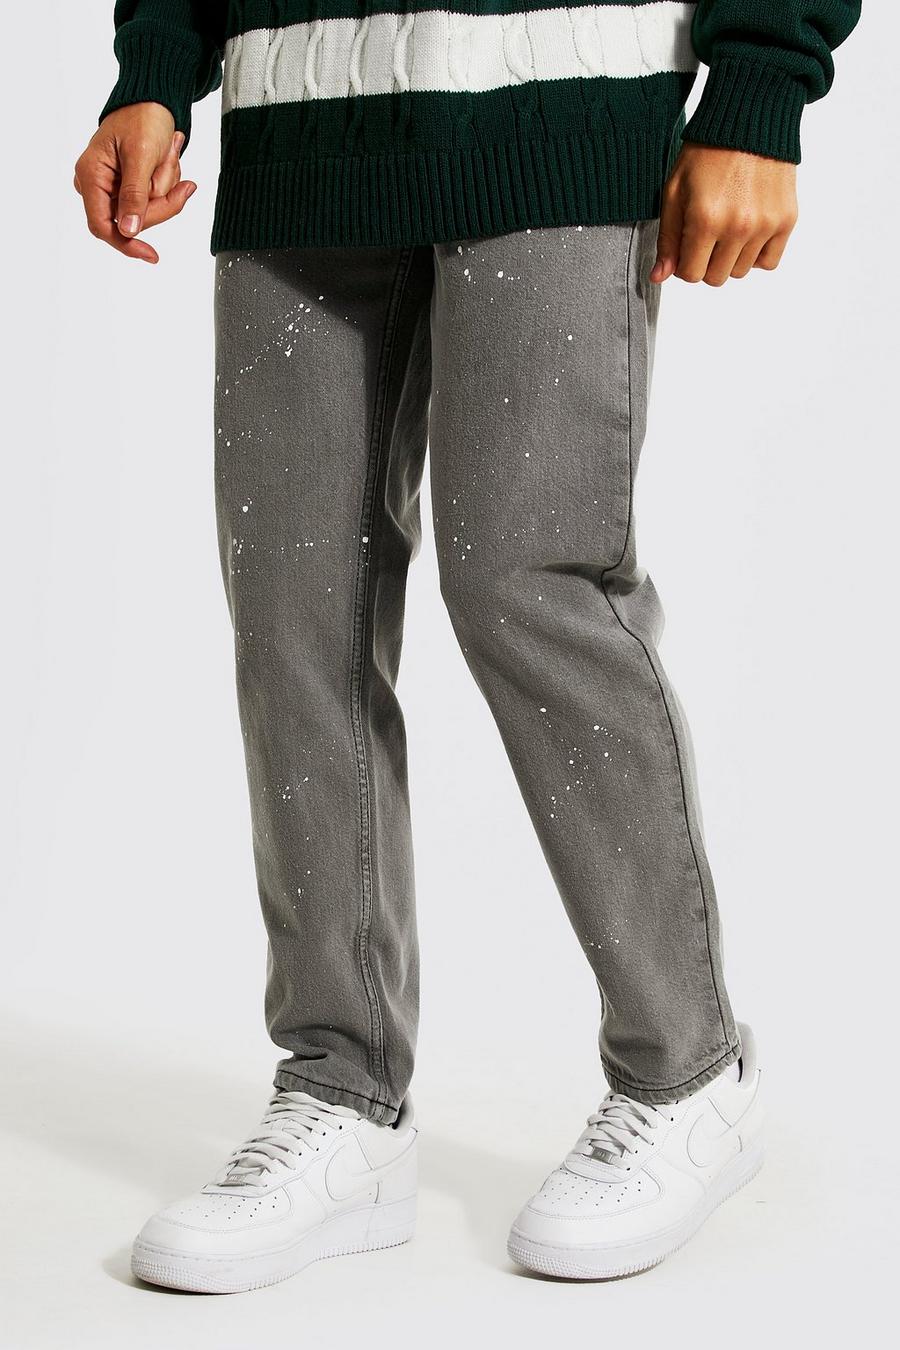 פחם grigio ג'ינס מבד קשיח בגזרה משוחררת עם כתמי צבע